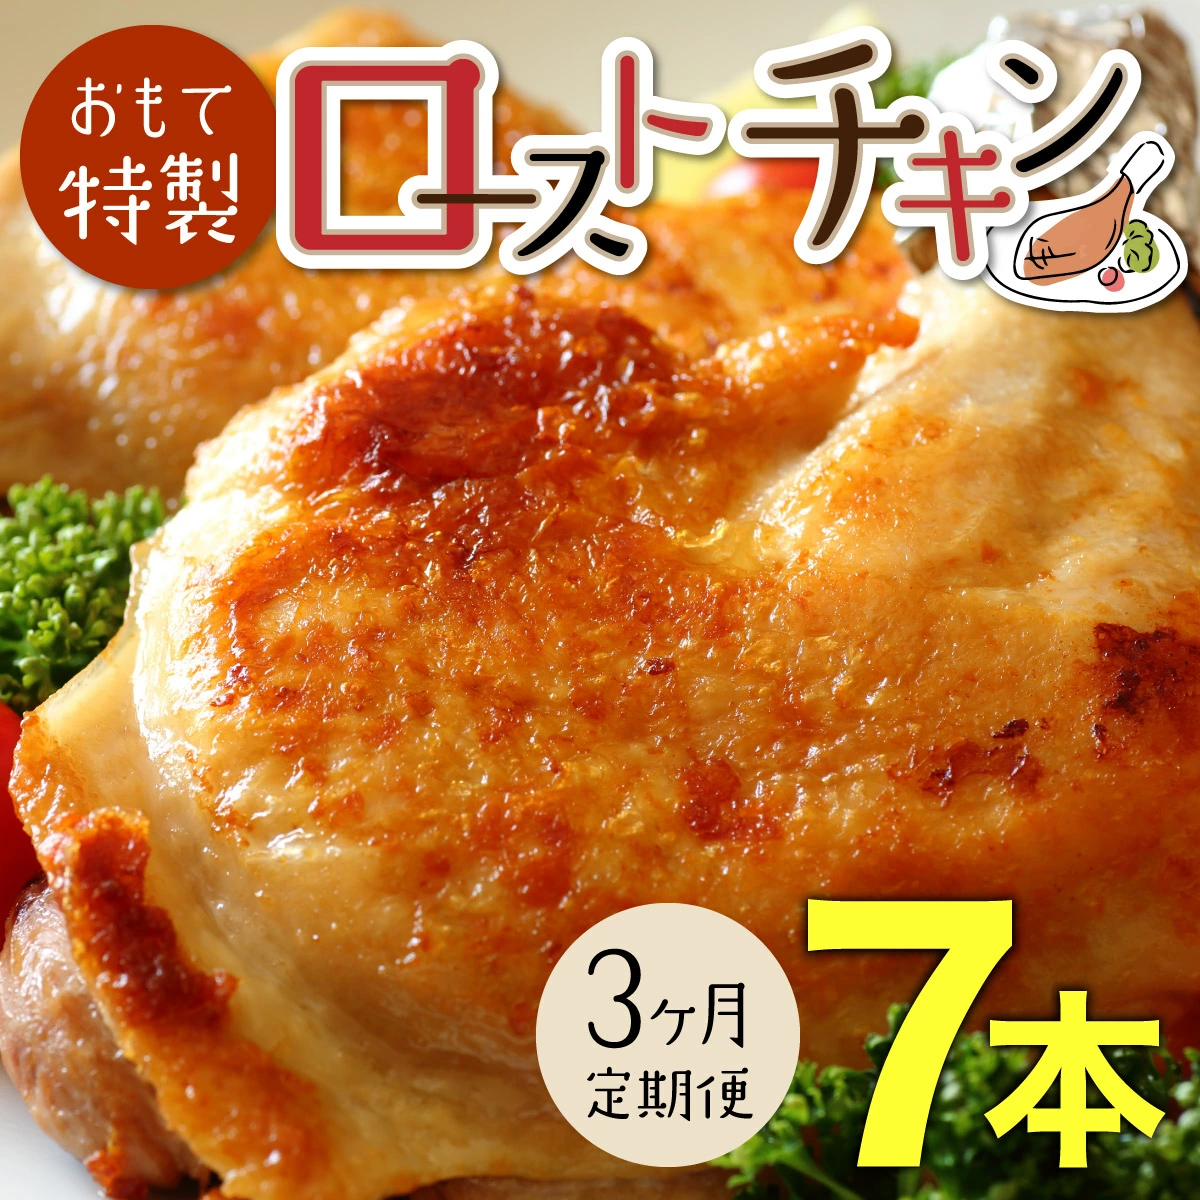 【3か月定期便】おもて特製 ローストチキン 7本 北海道 岩内町 鶏肉 チキンレッグ 簡単調理 おつまみ F21H-550